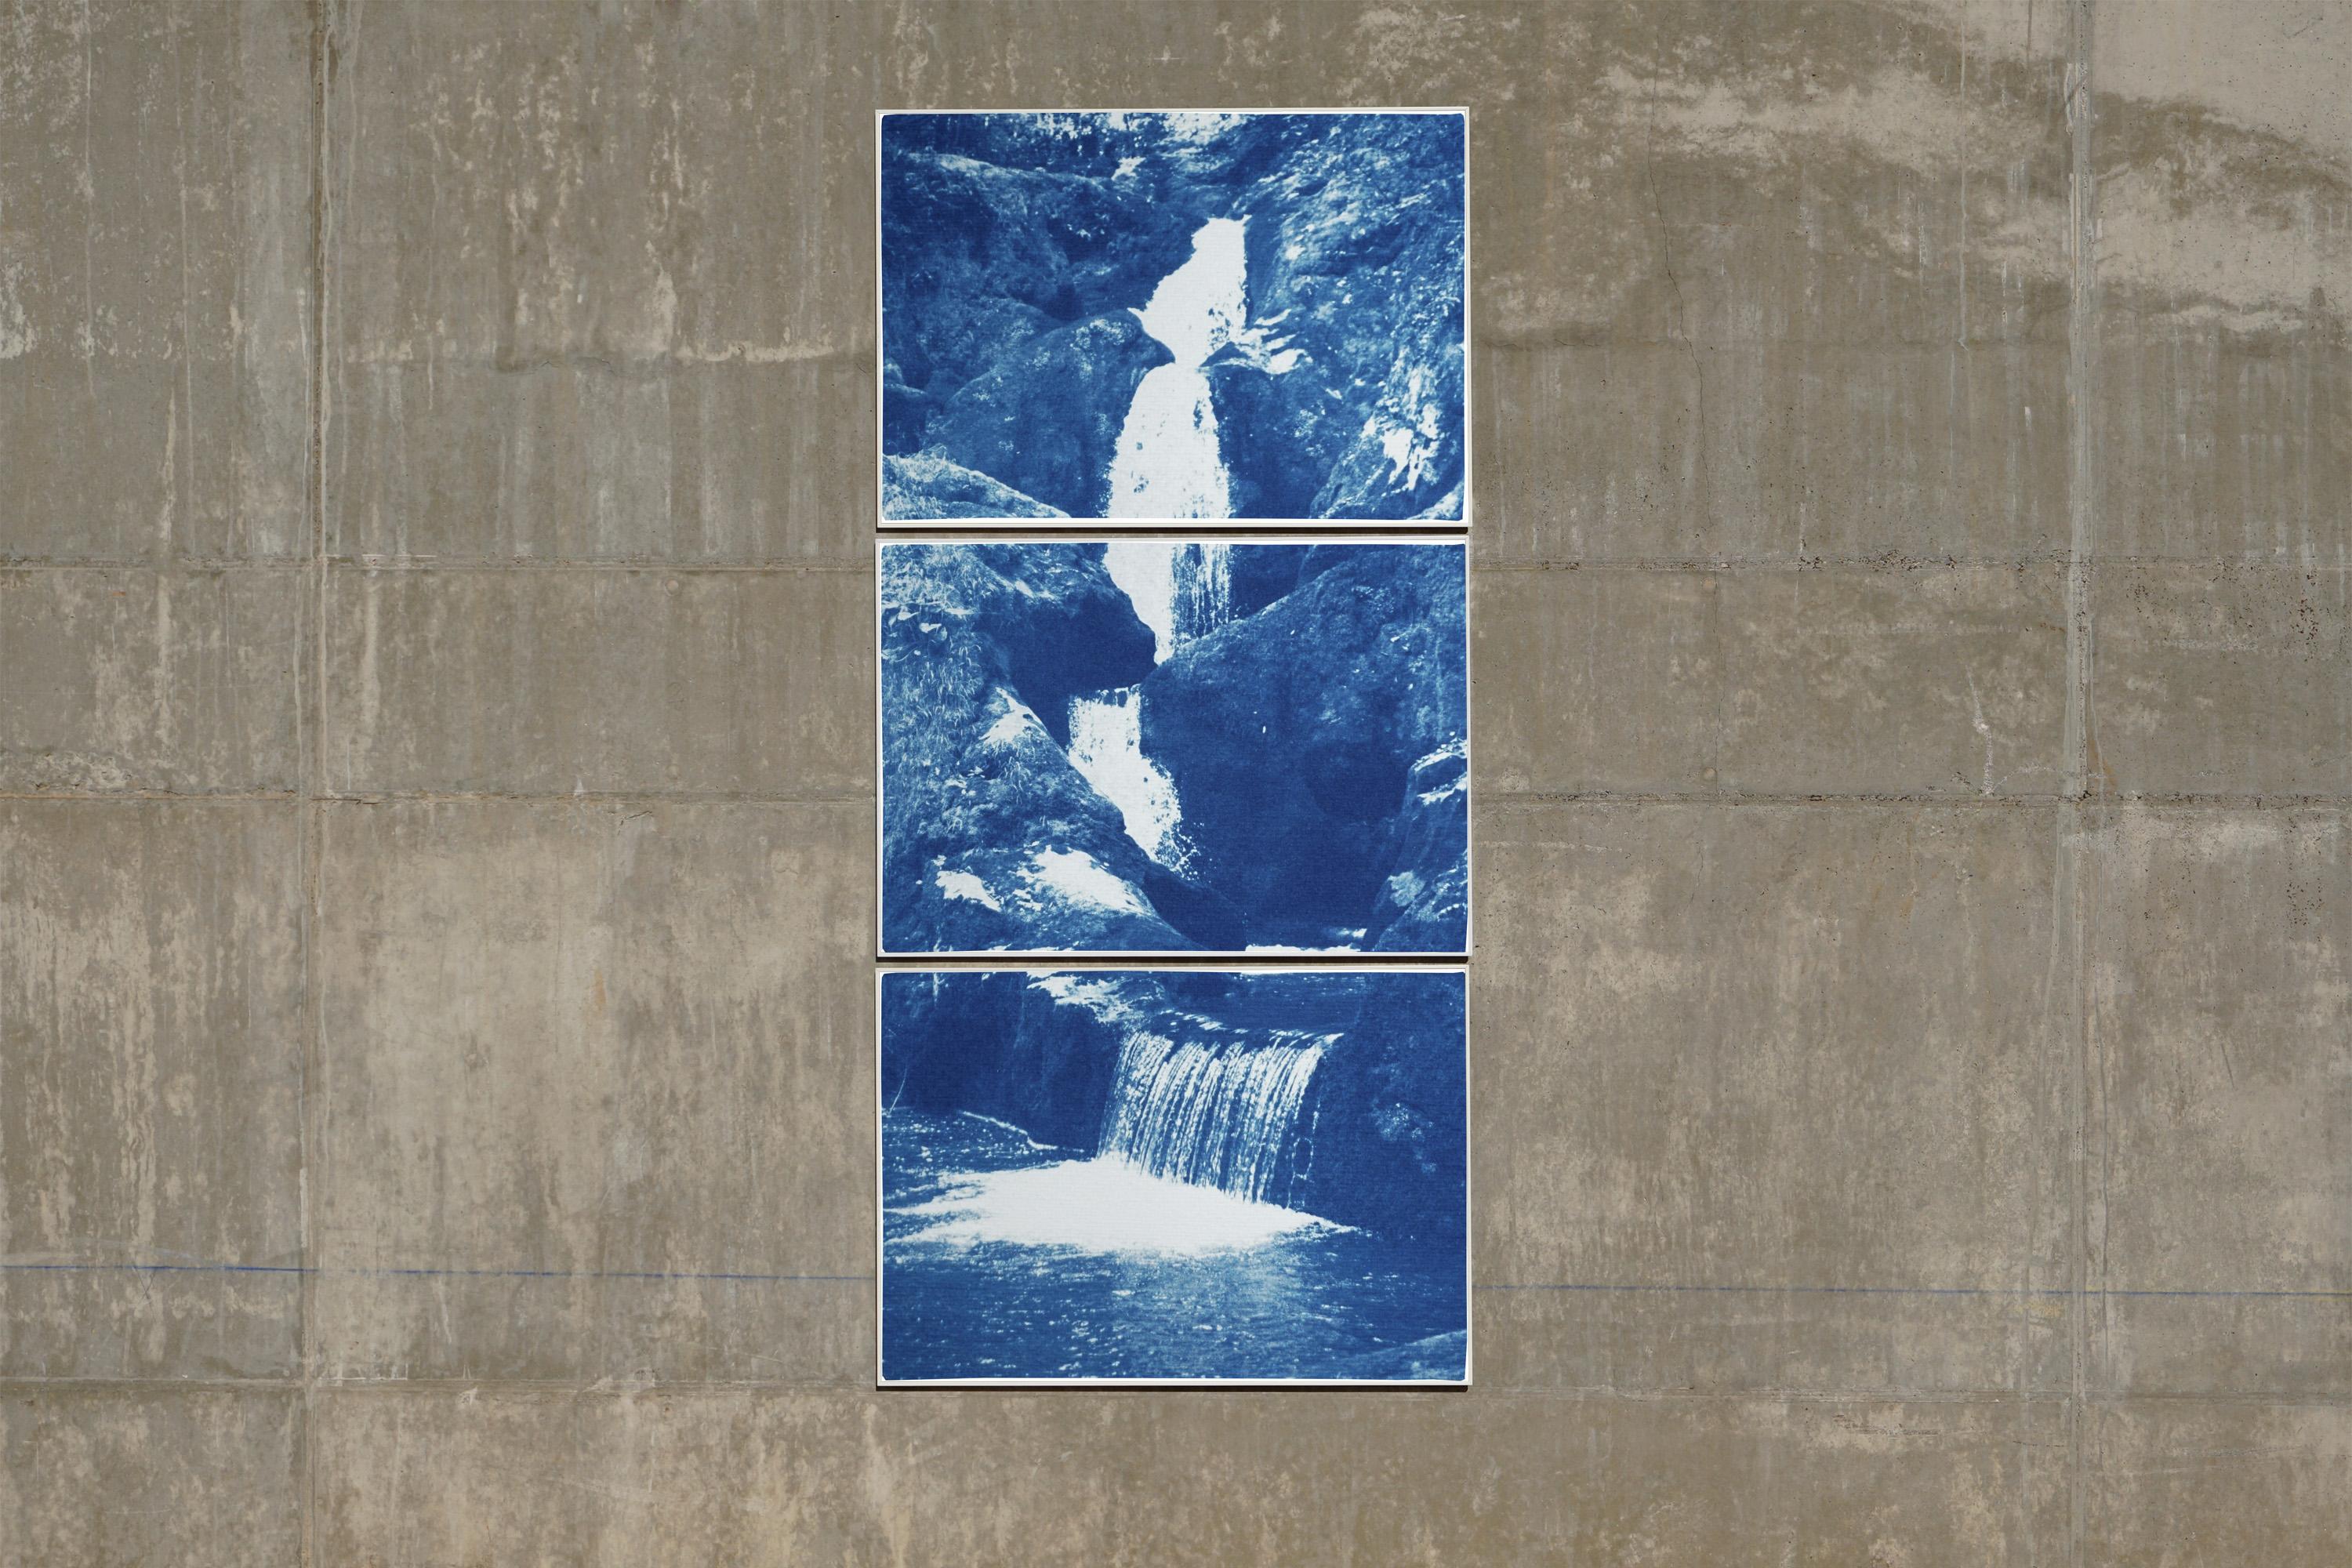 Vertikales Triptychon eines Zen-Wälder-Wasserfalles, mehrteilige Zyanotypie, Feng Shui-Kunst  – Photograph von Kind of Cyan